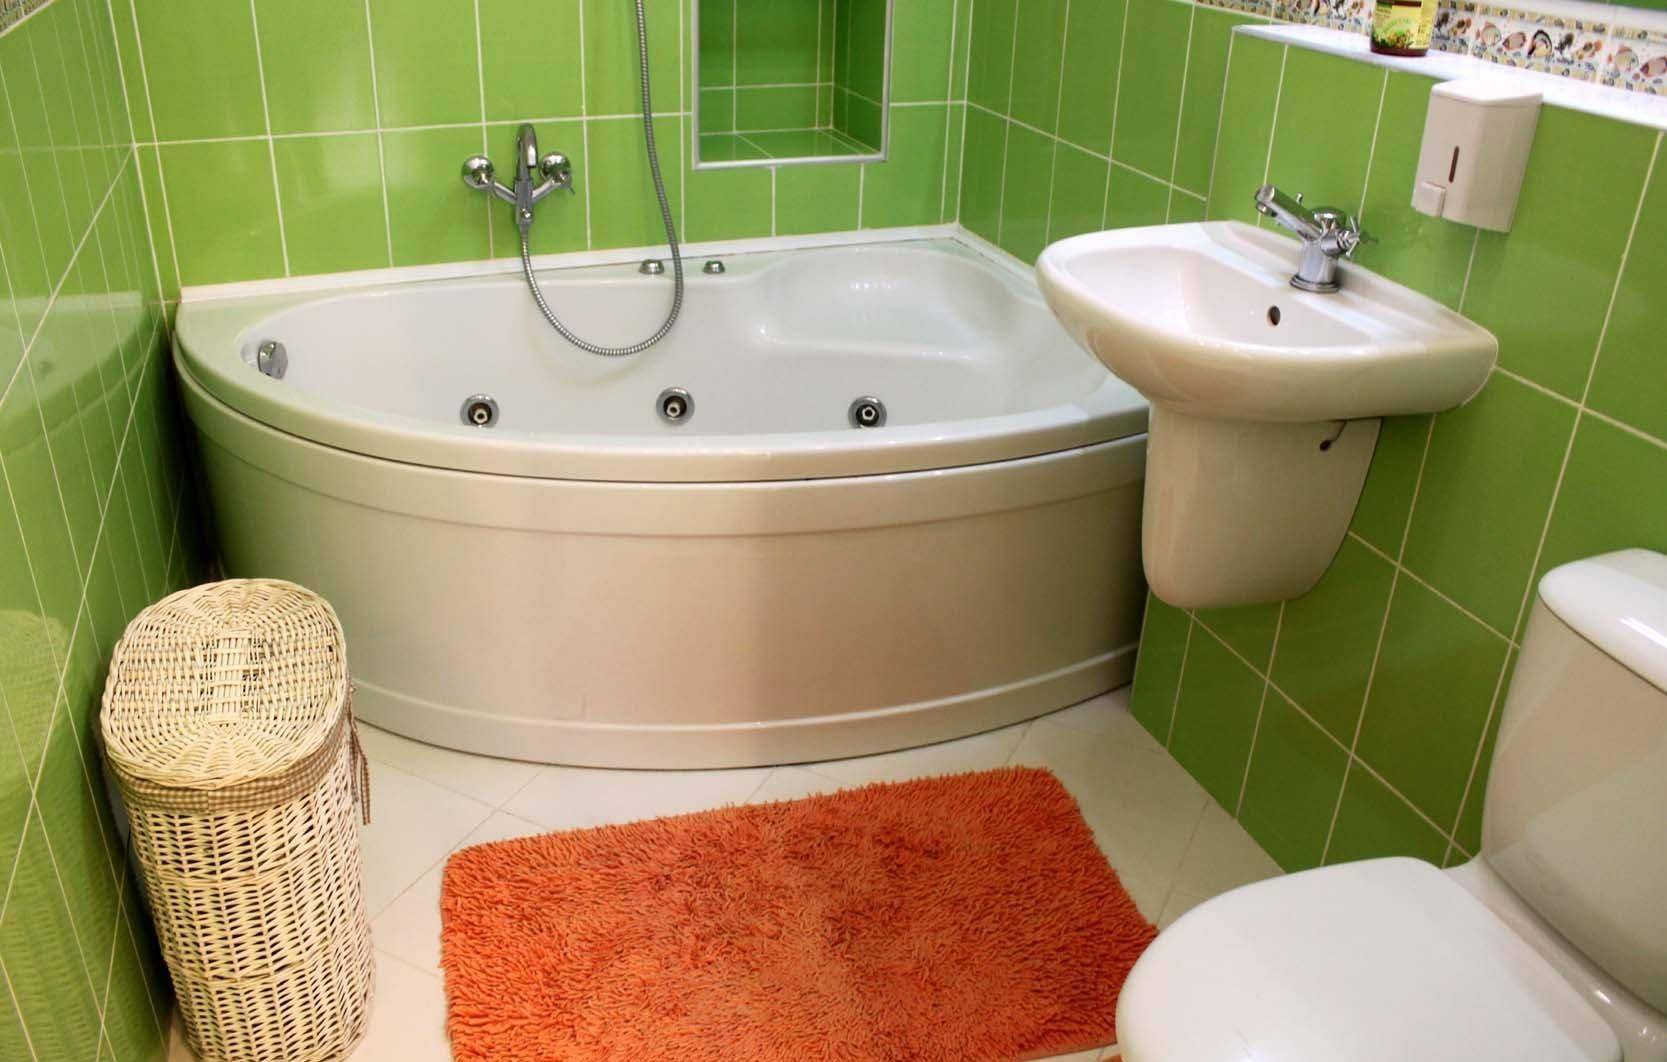 Как сделать ремонт в ванной: выбираем материалы и ремонтируем ванную комнату быстро, самостоятельно и недорого